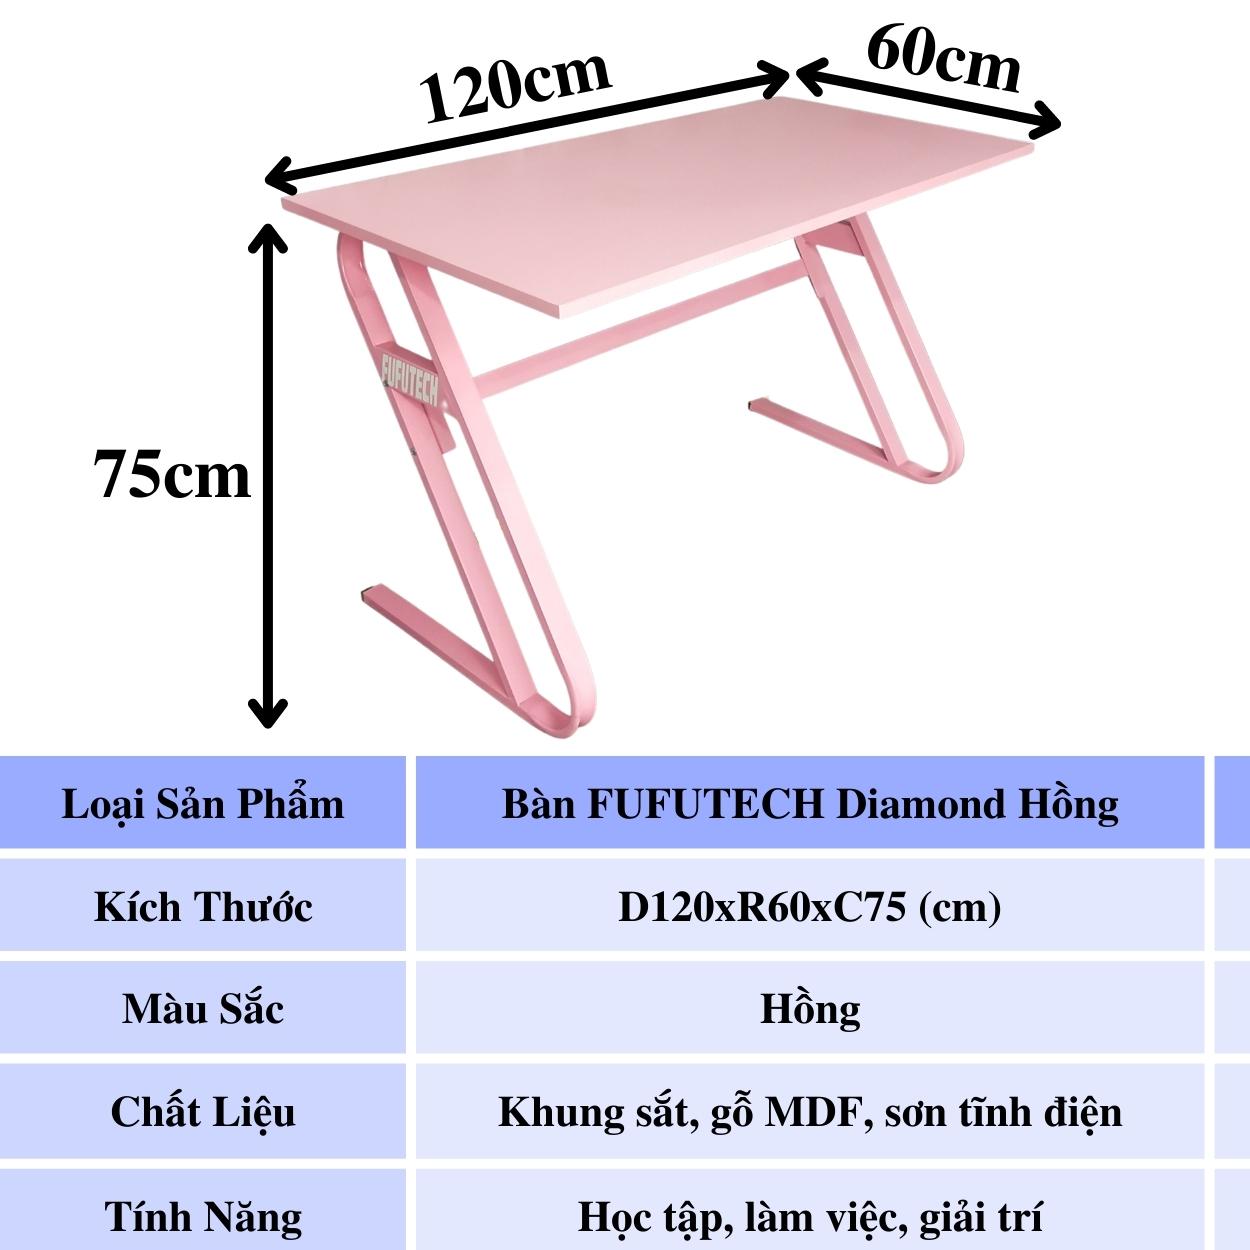 Bàn màu hồng FUFUTECH Diamond 120x60 cm dùng làm bàn để máy tính, livestream, chơi game, làm việc